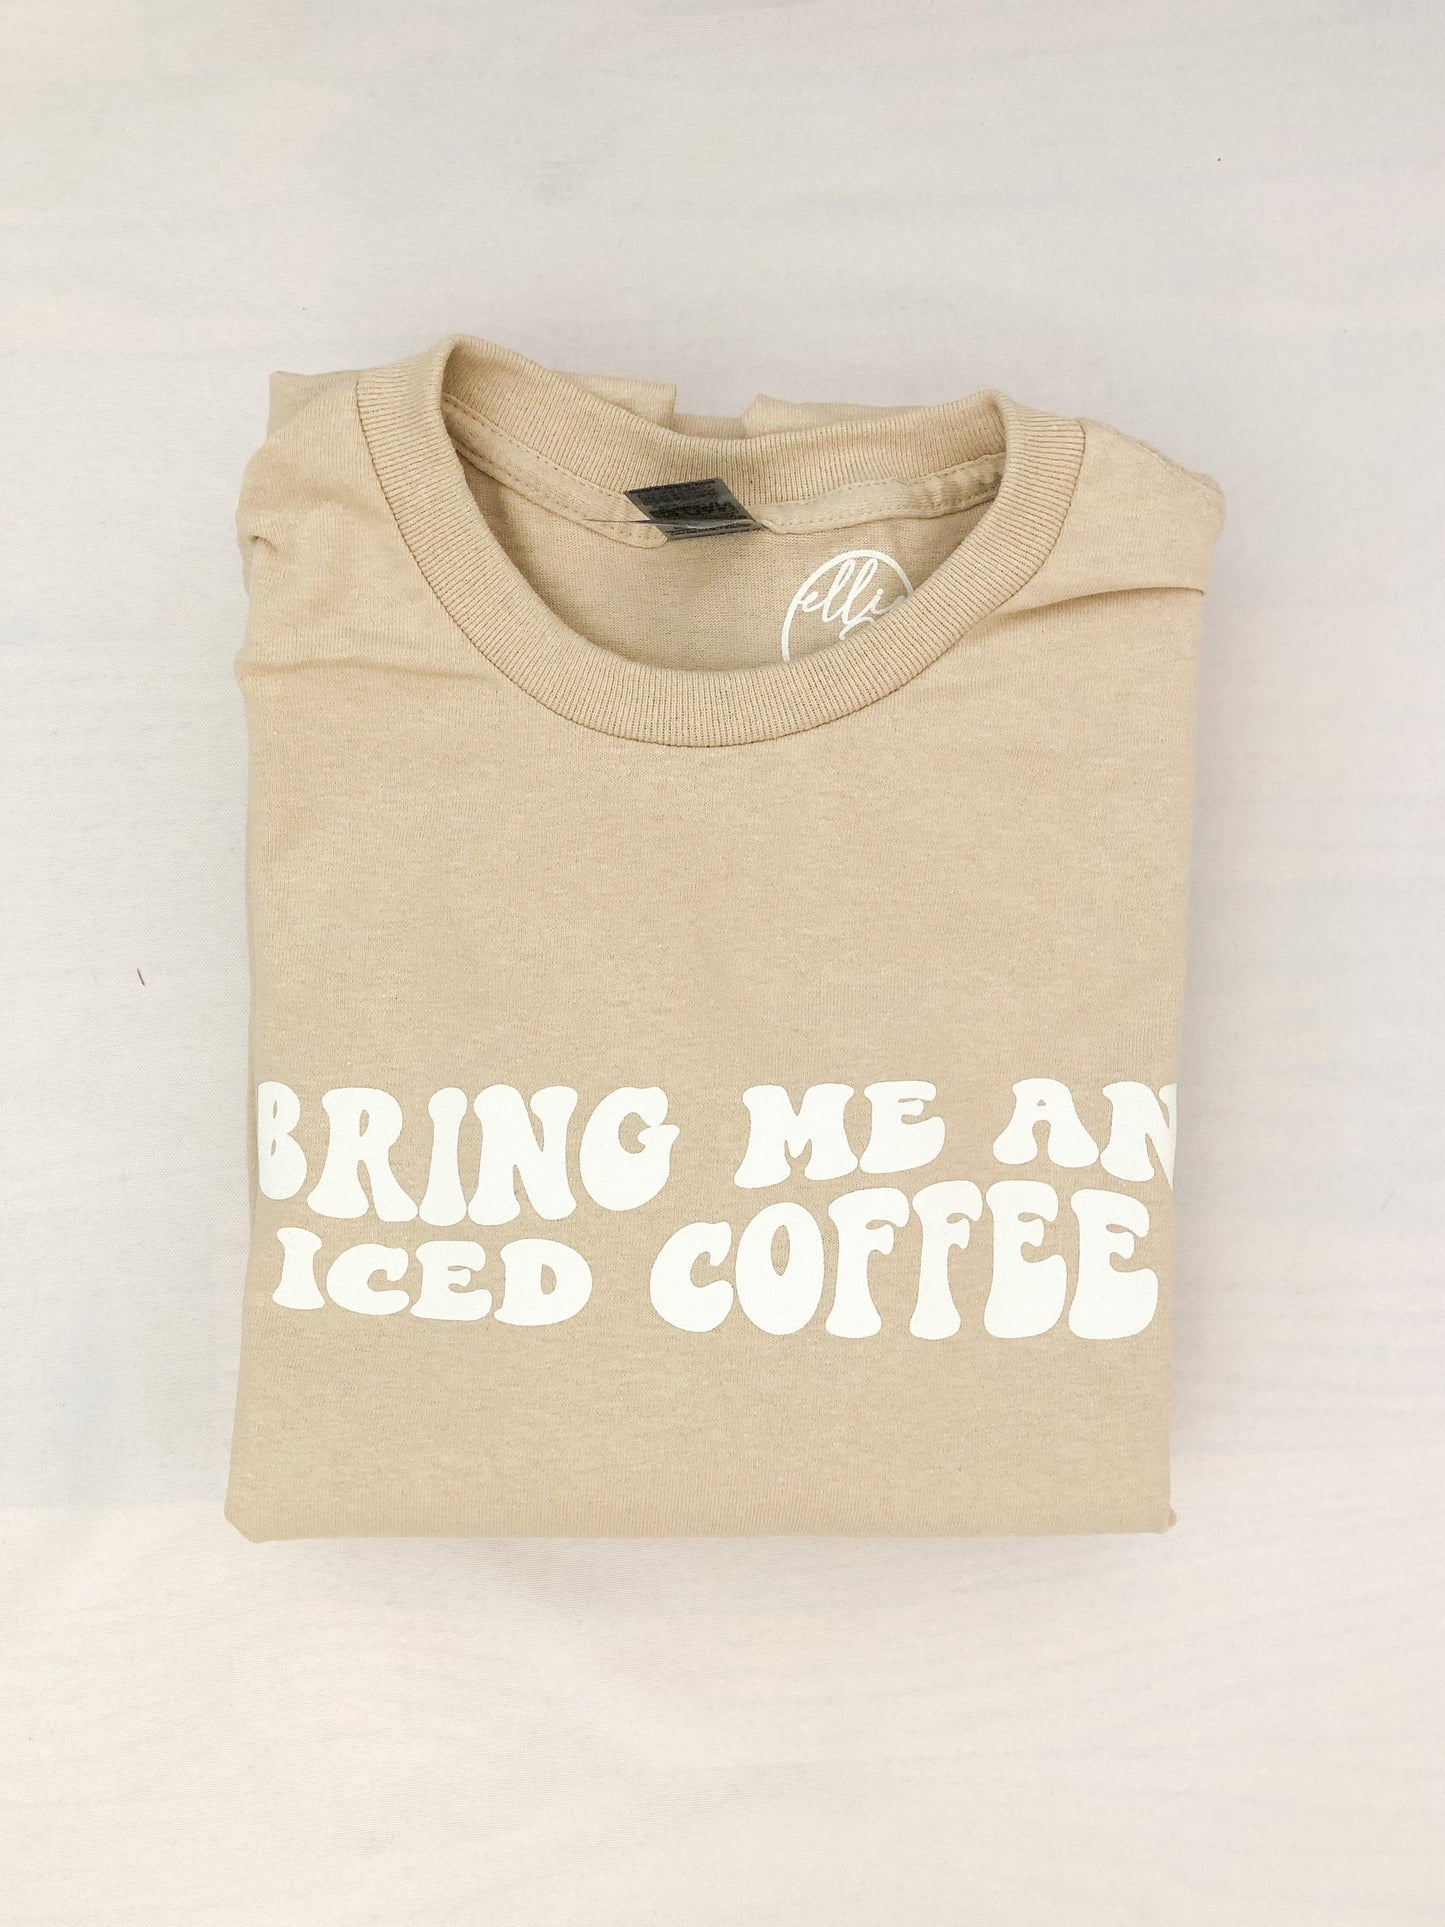 Bring Me An Iced Coffee Tee